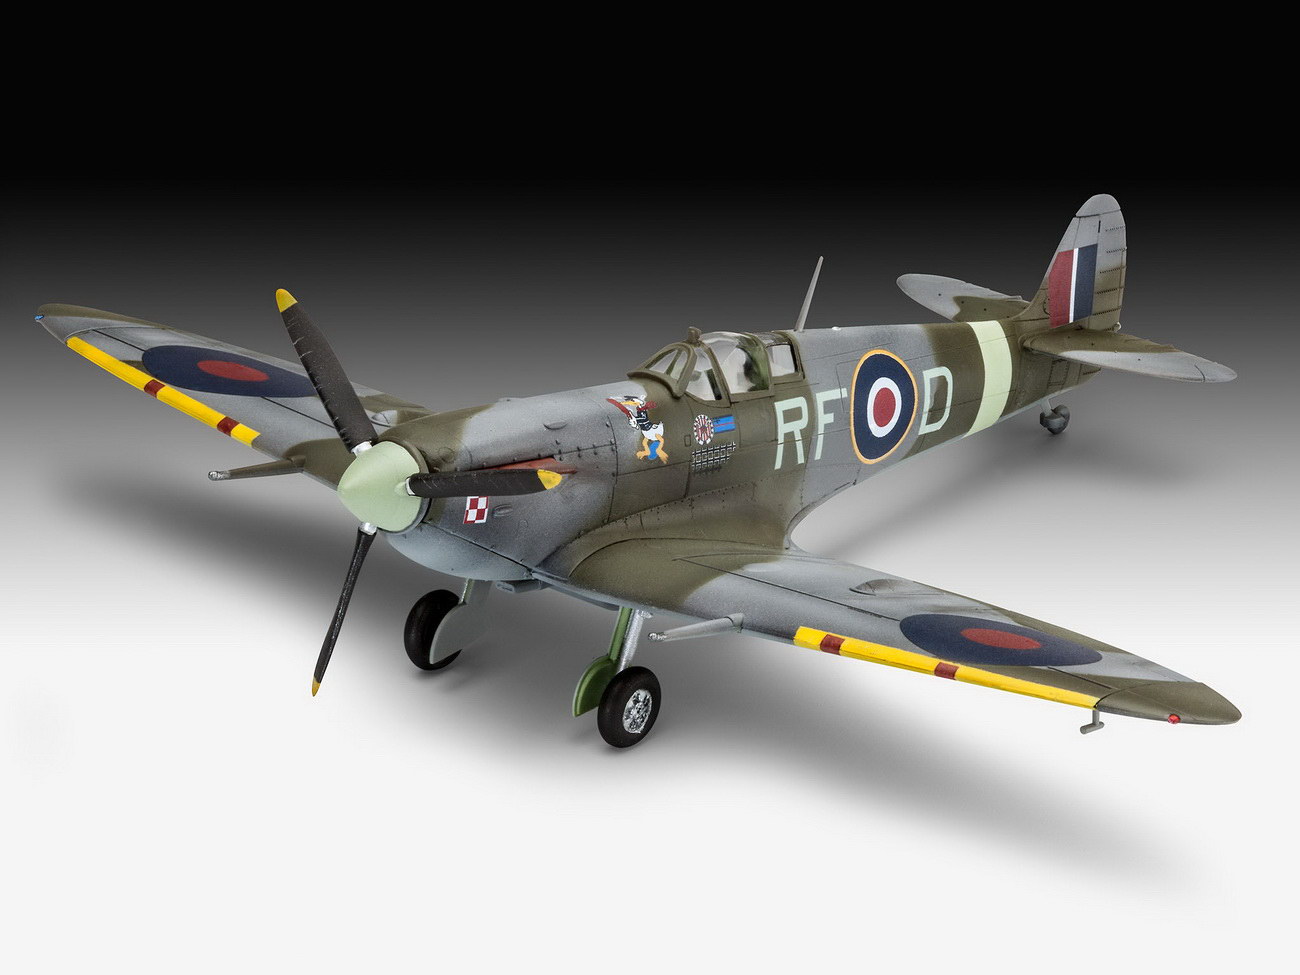 Revell 03897 - Supermarine Spitfire Mk.Vb